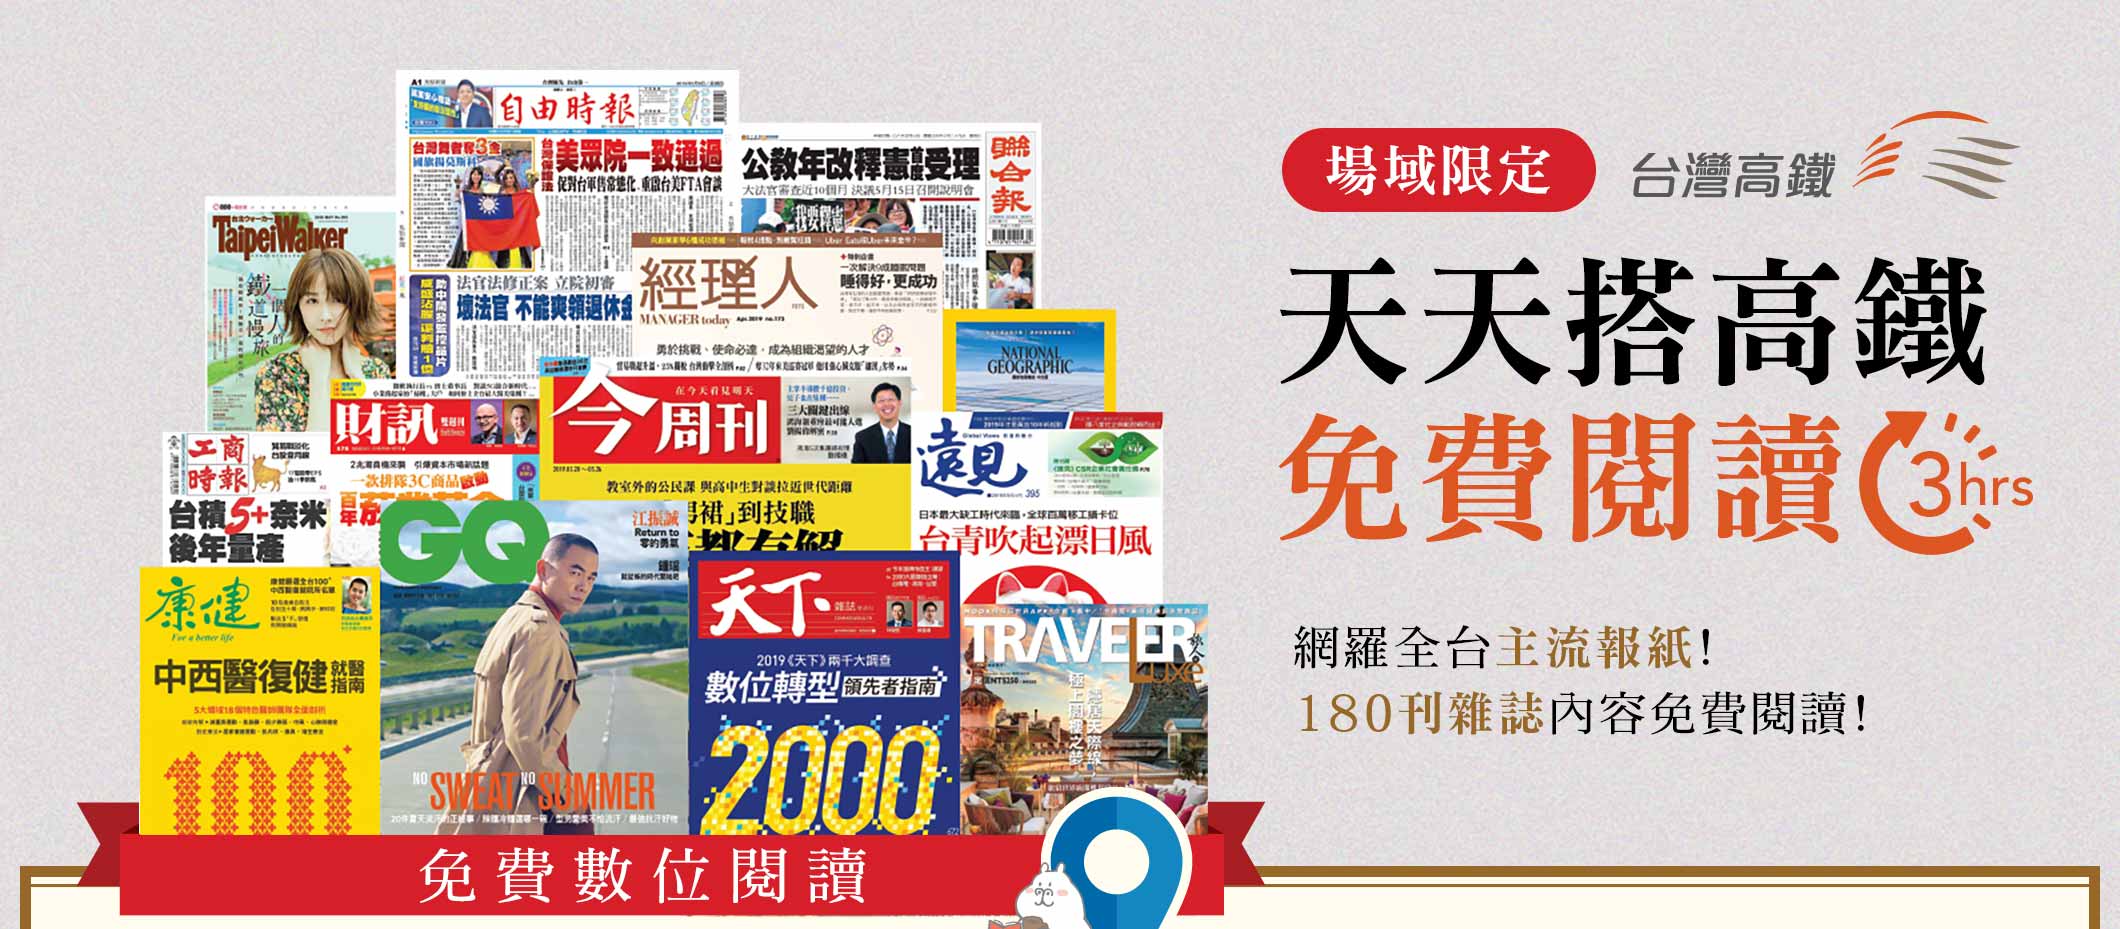 天天搭高鐵 免費閱讀三小時，場域限定 台灣高鐵 網羅全台八大報紙! 180刊雜誌內容免費閱讀!